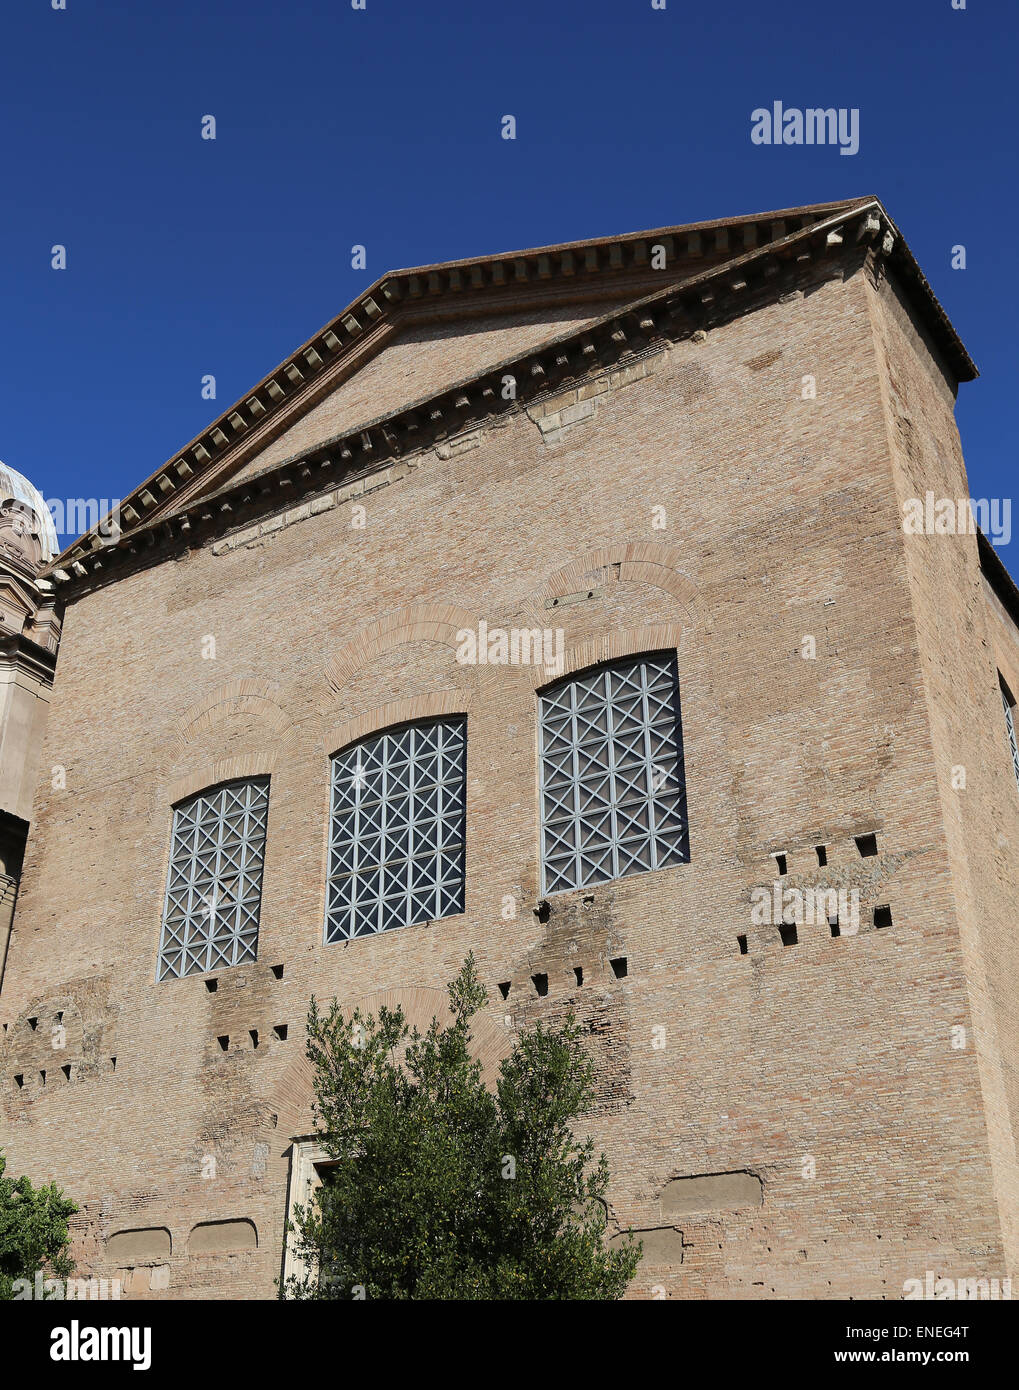 L'Italia. Roma. Curia Julia o Curia. La Casa del Senato nell'antica città di Roma. Foro Romano. Foto Stock